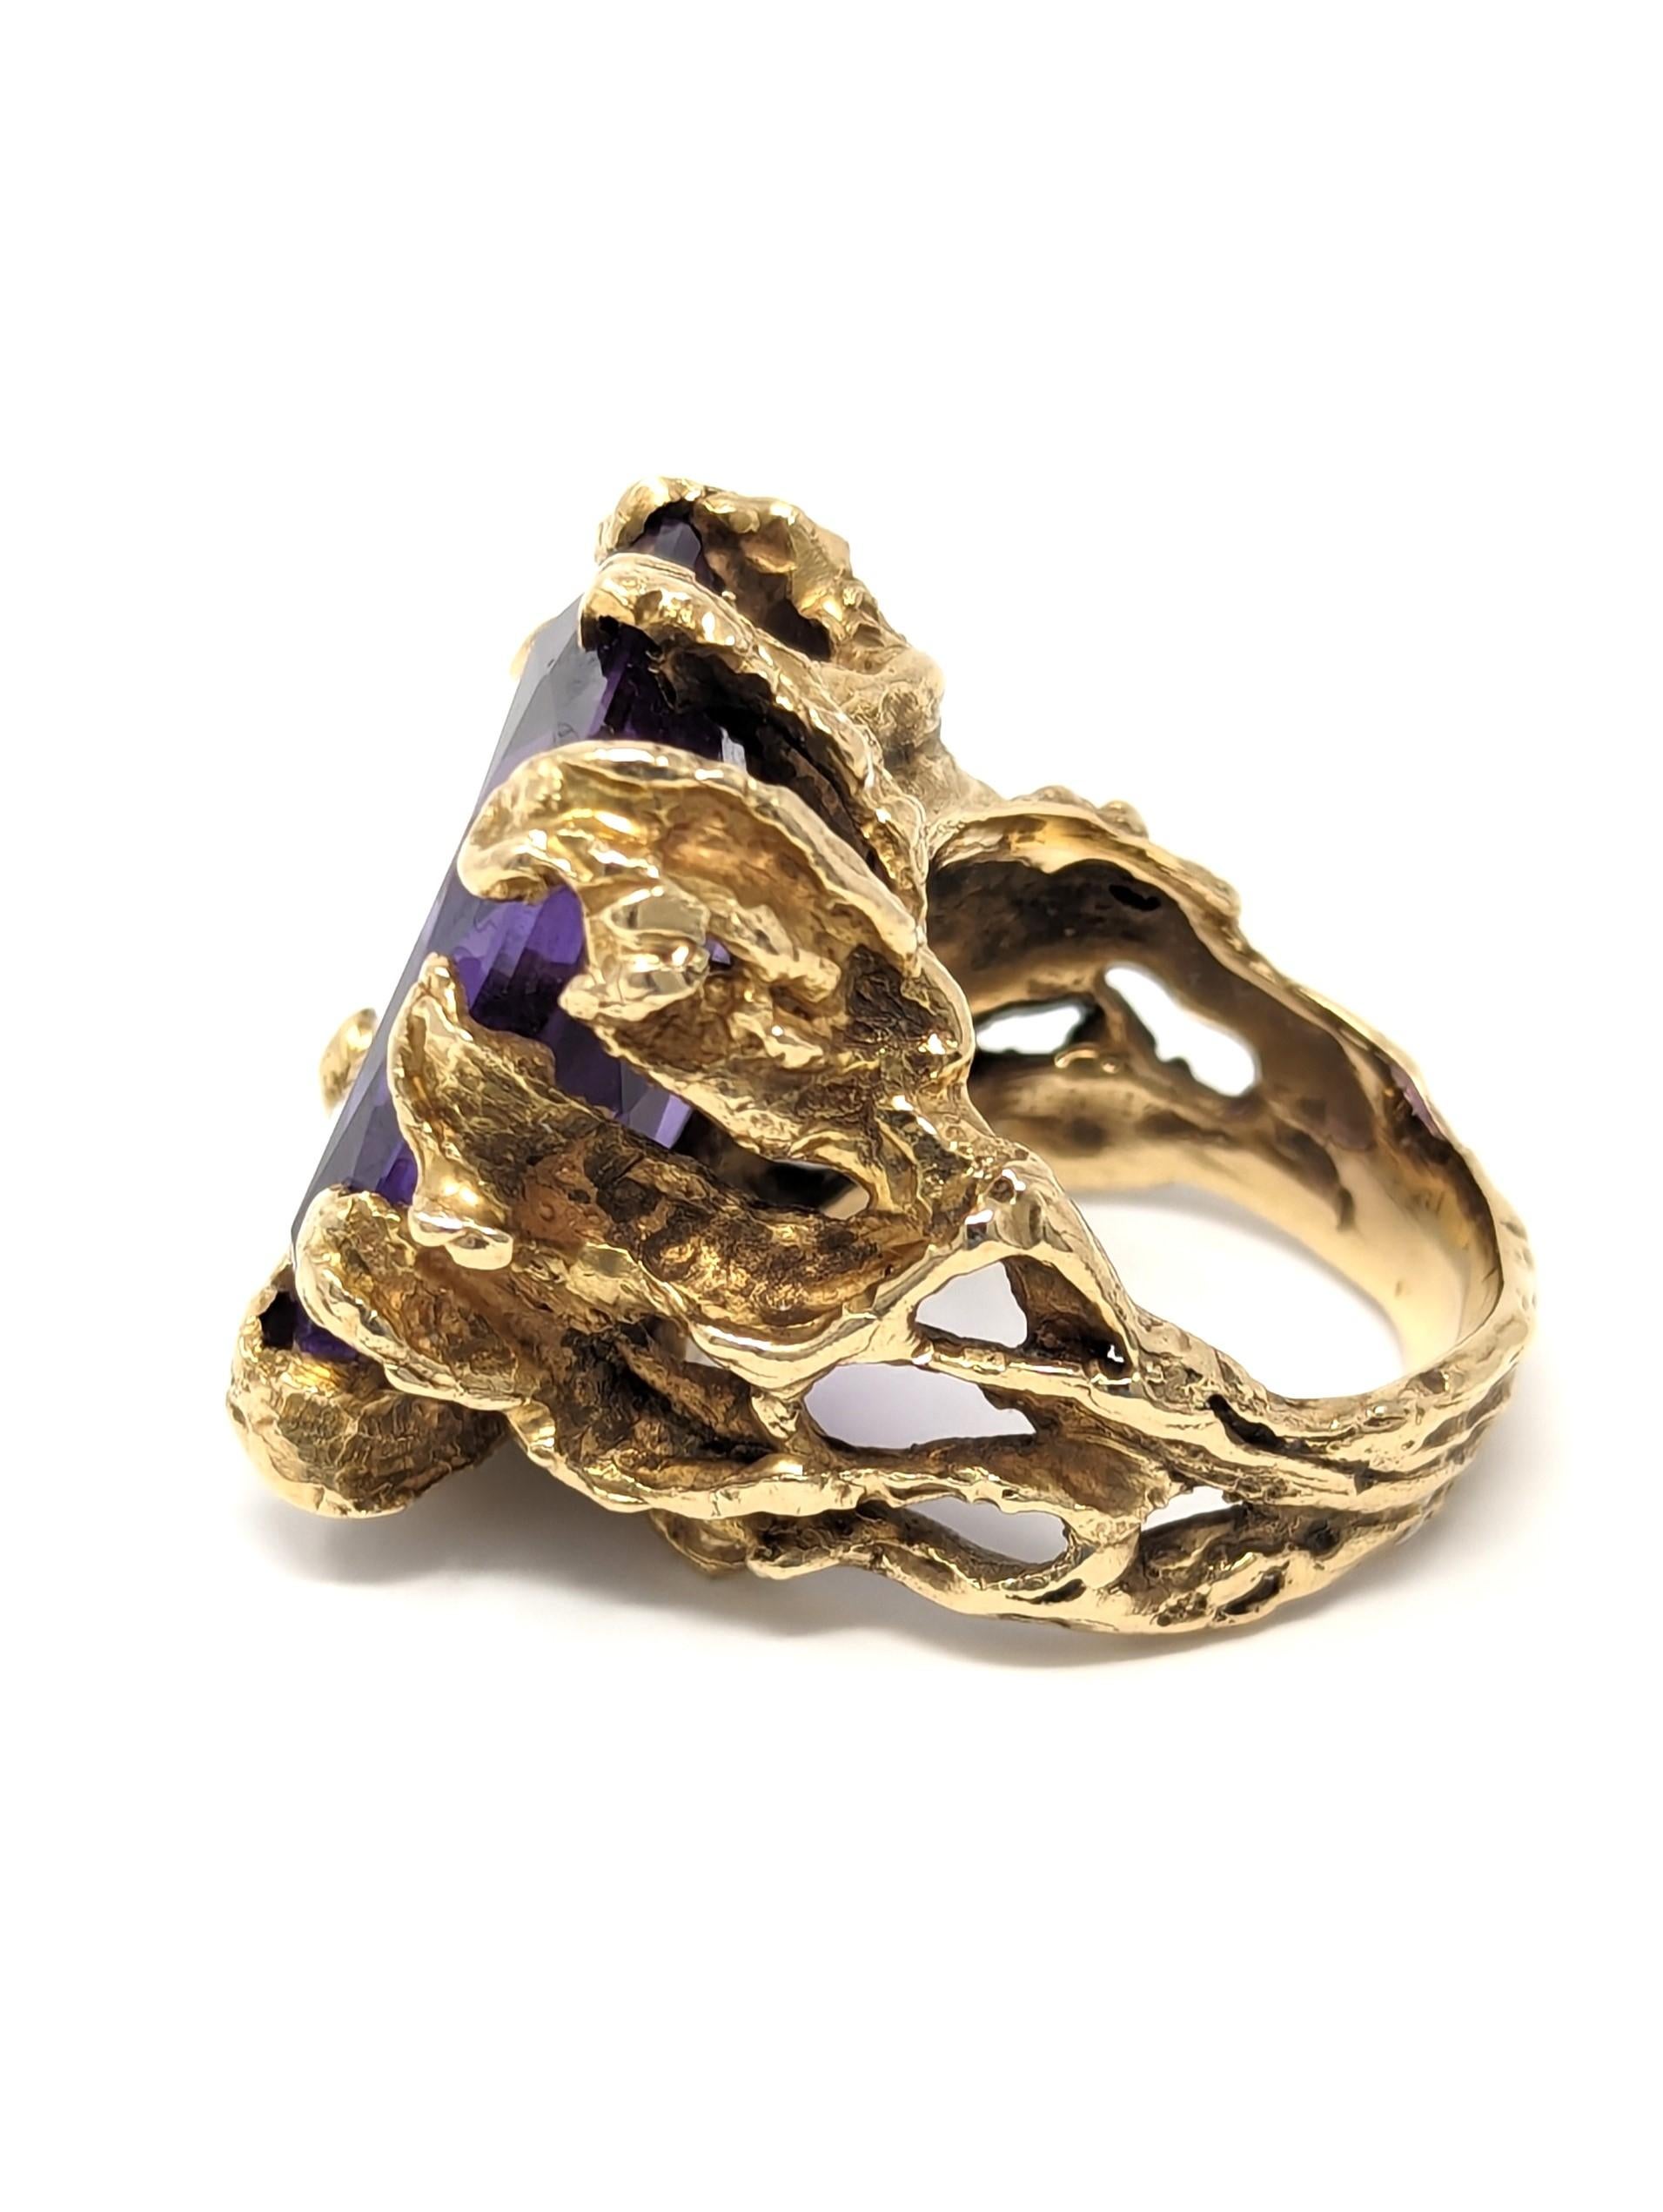 Mixed Cut Vintage 14k Ring Color Change Sapphire Purple Brutalist Freeform Size 6.75 For Sale